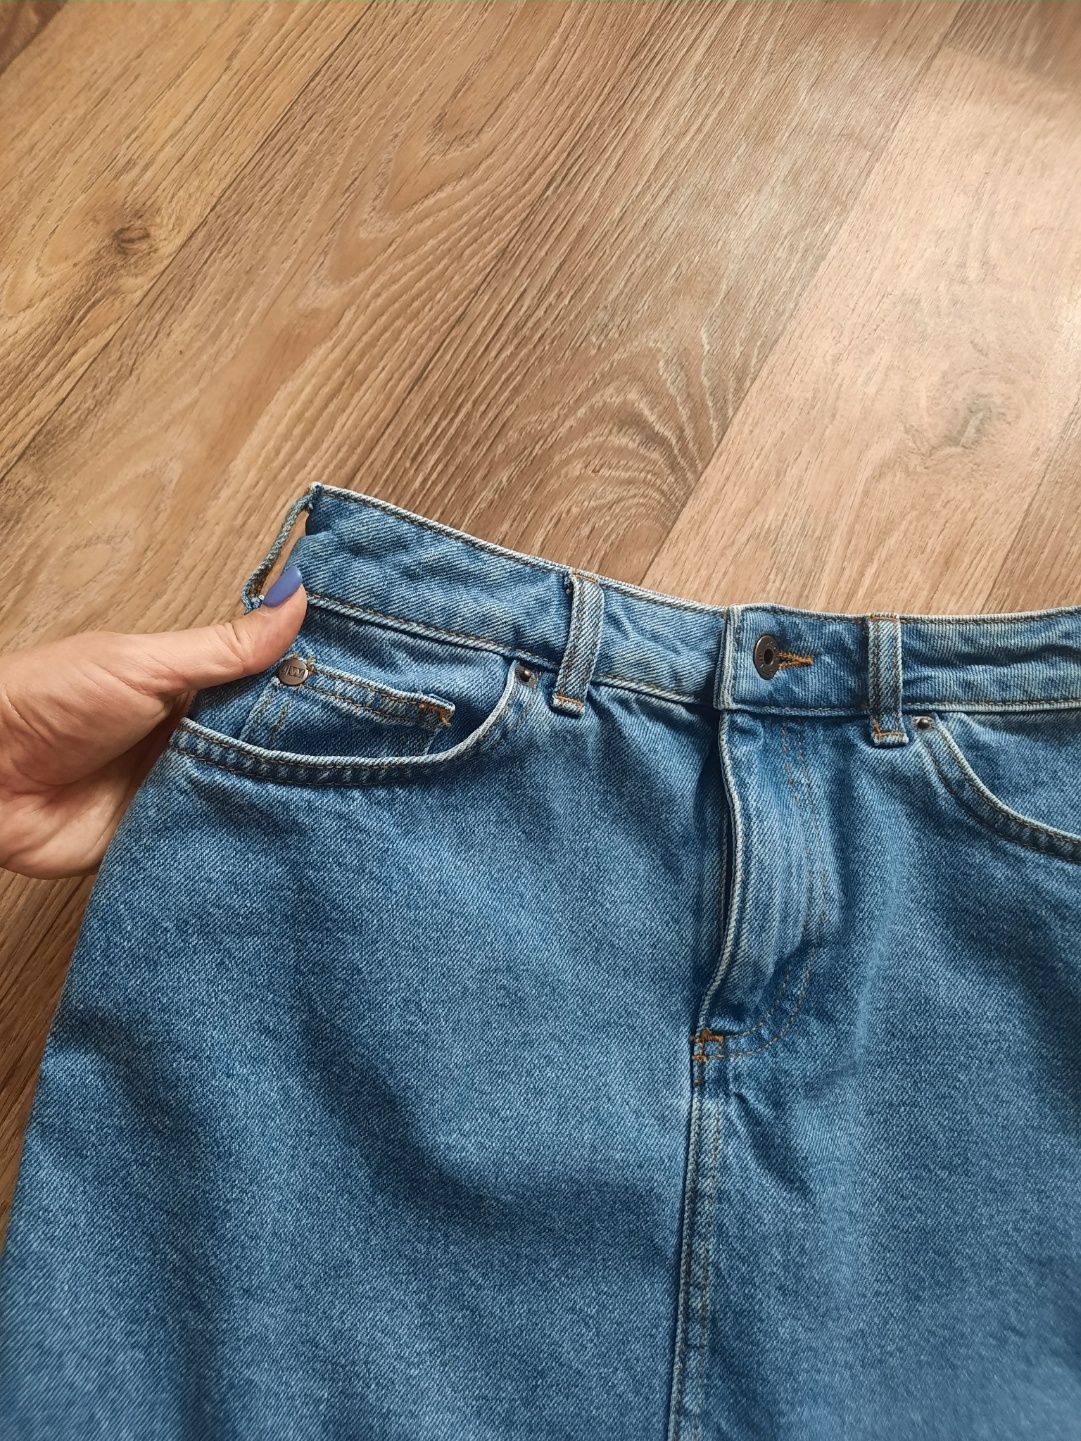 Стильна джинсова юбка від Jack Wills S-M (44 р-р))